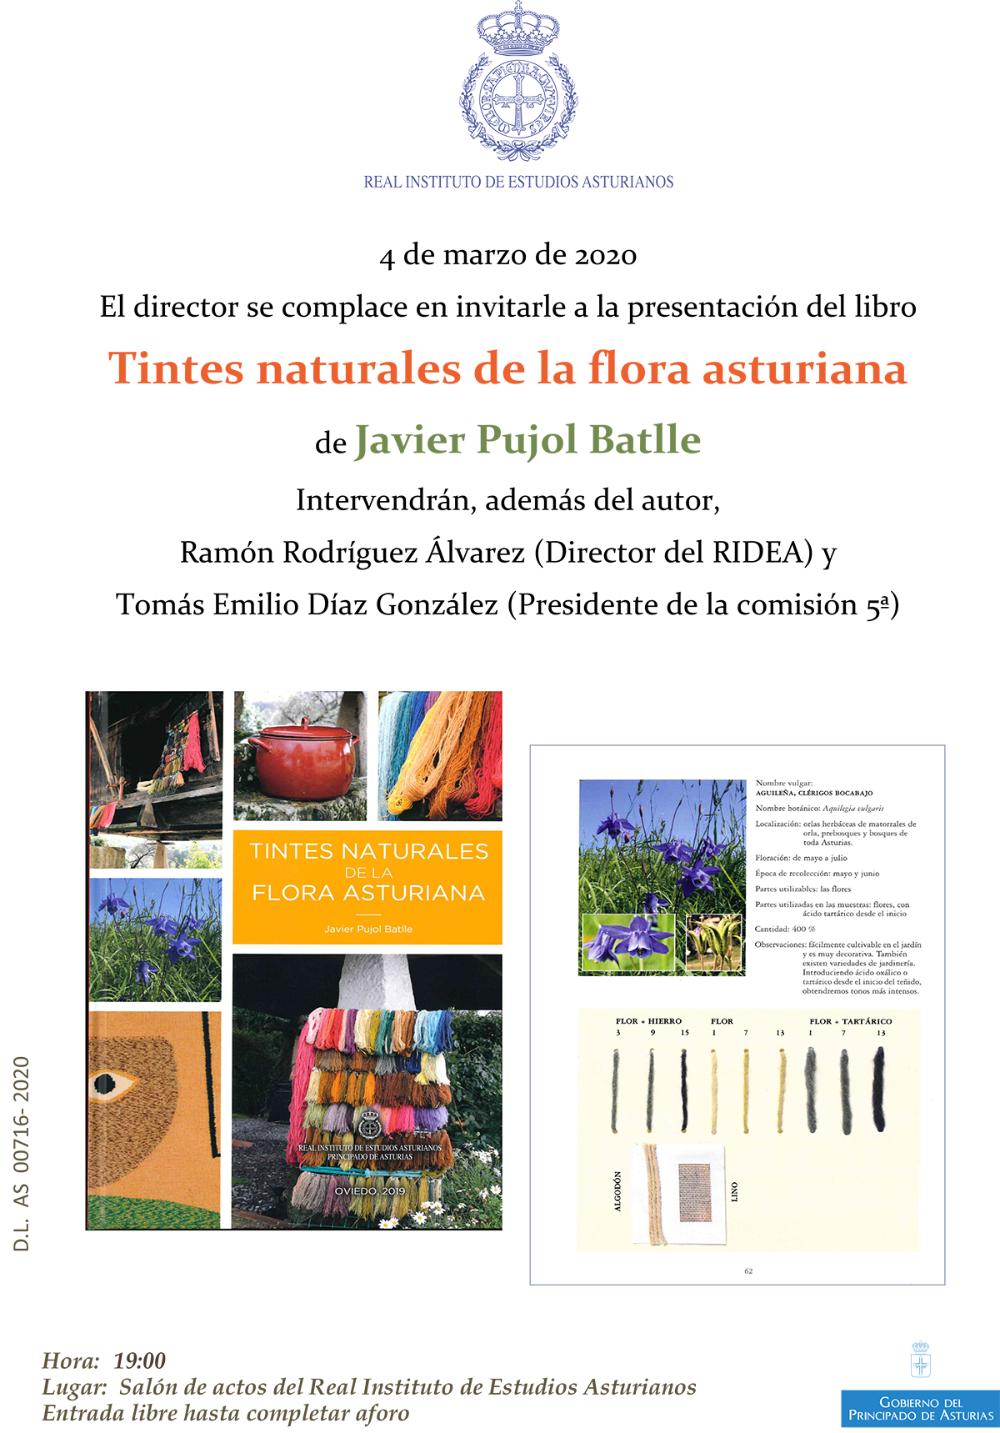 Imagen - Presentación del libro Tintes naturales de la flora asturiana